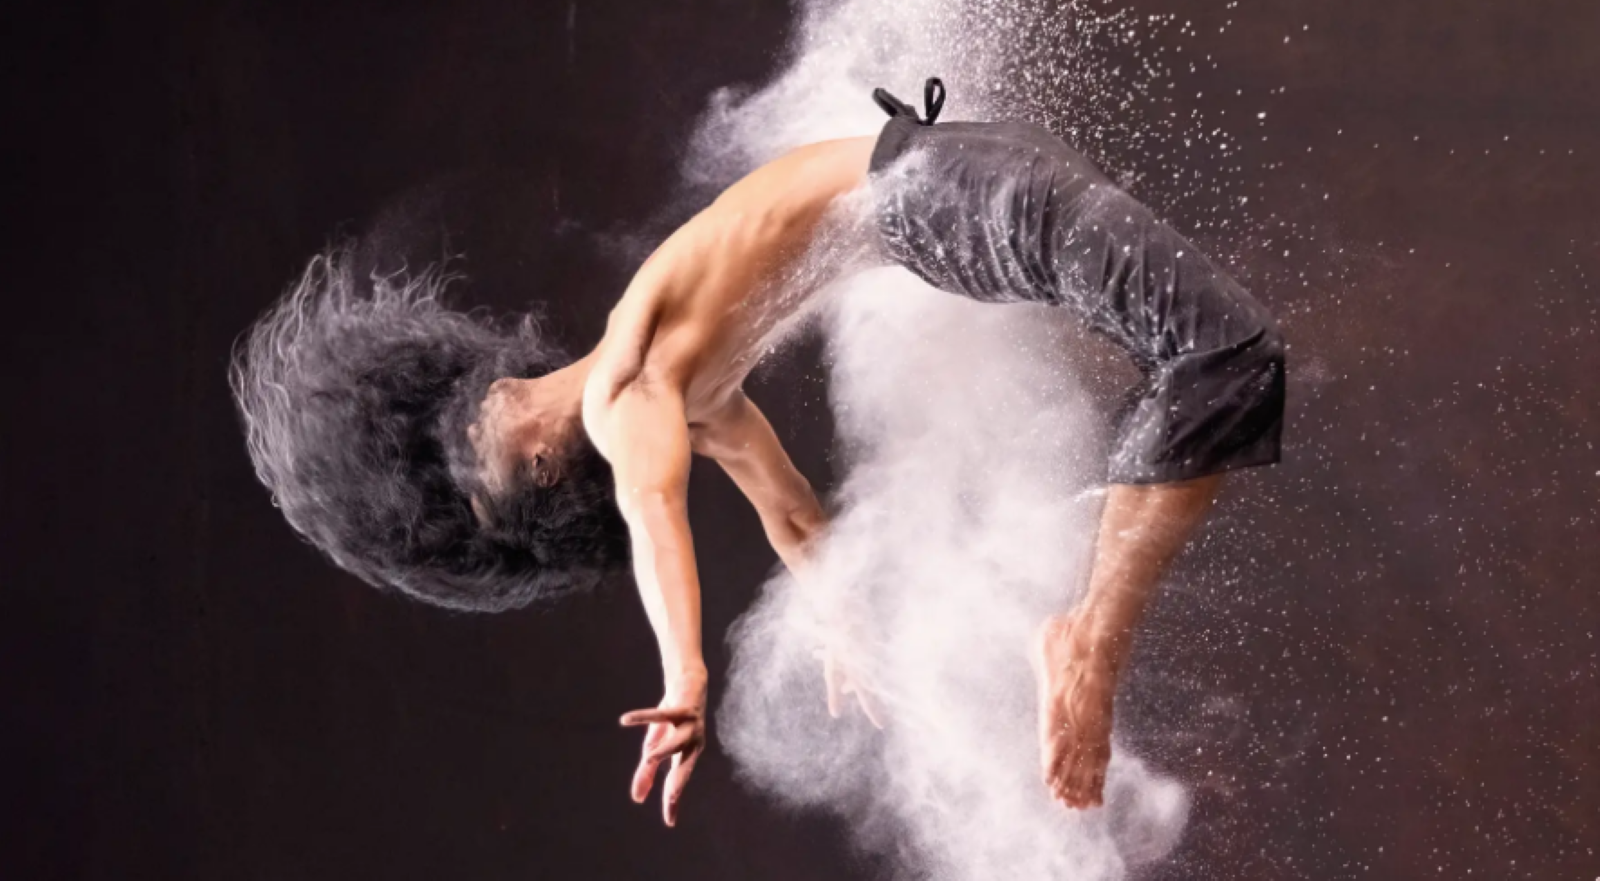 La coreógrafa Carmen Werner, 8 obras internacionales y danza acrobática, en Madrid Danza